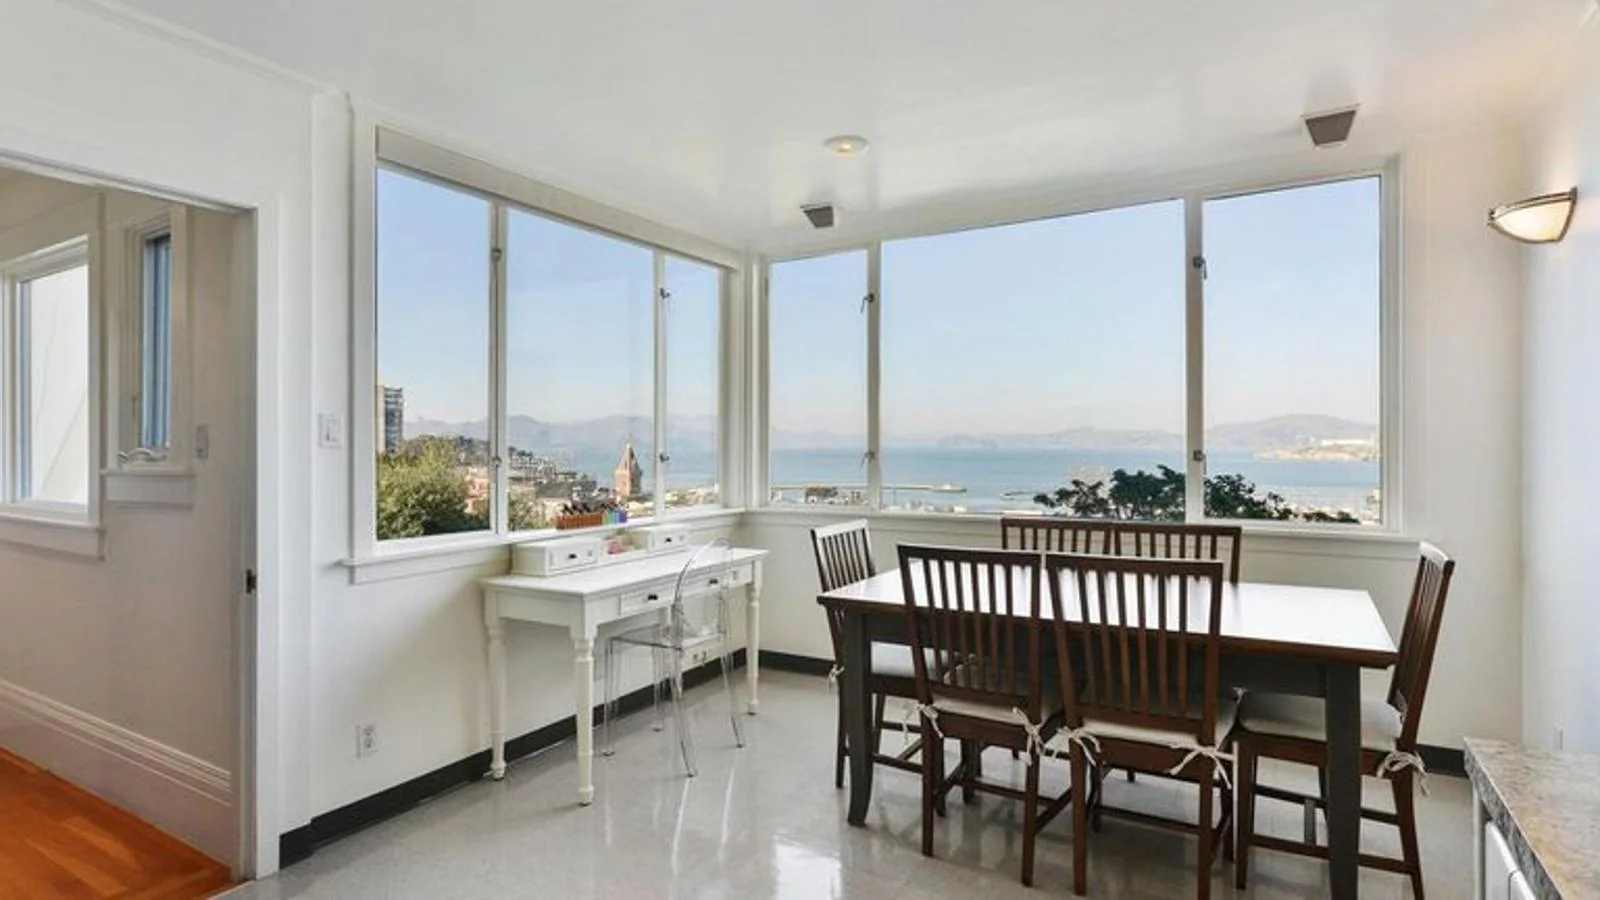 Sala de estar. El actor fue propietario de la casa en 2008 cuando la compró por 7,5 millones de euros, y ahora esta residencia de cuatro pisos con vistas a la bahía de San Francisco está en el mercado por 9,7 millones de euros.